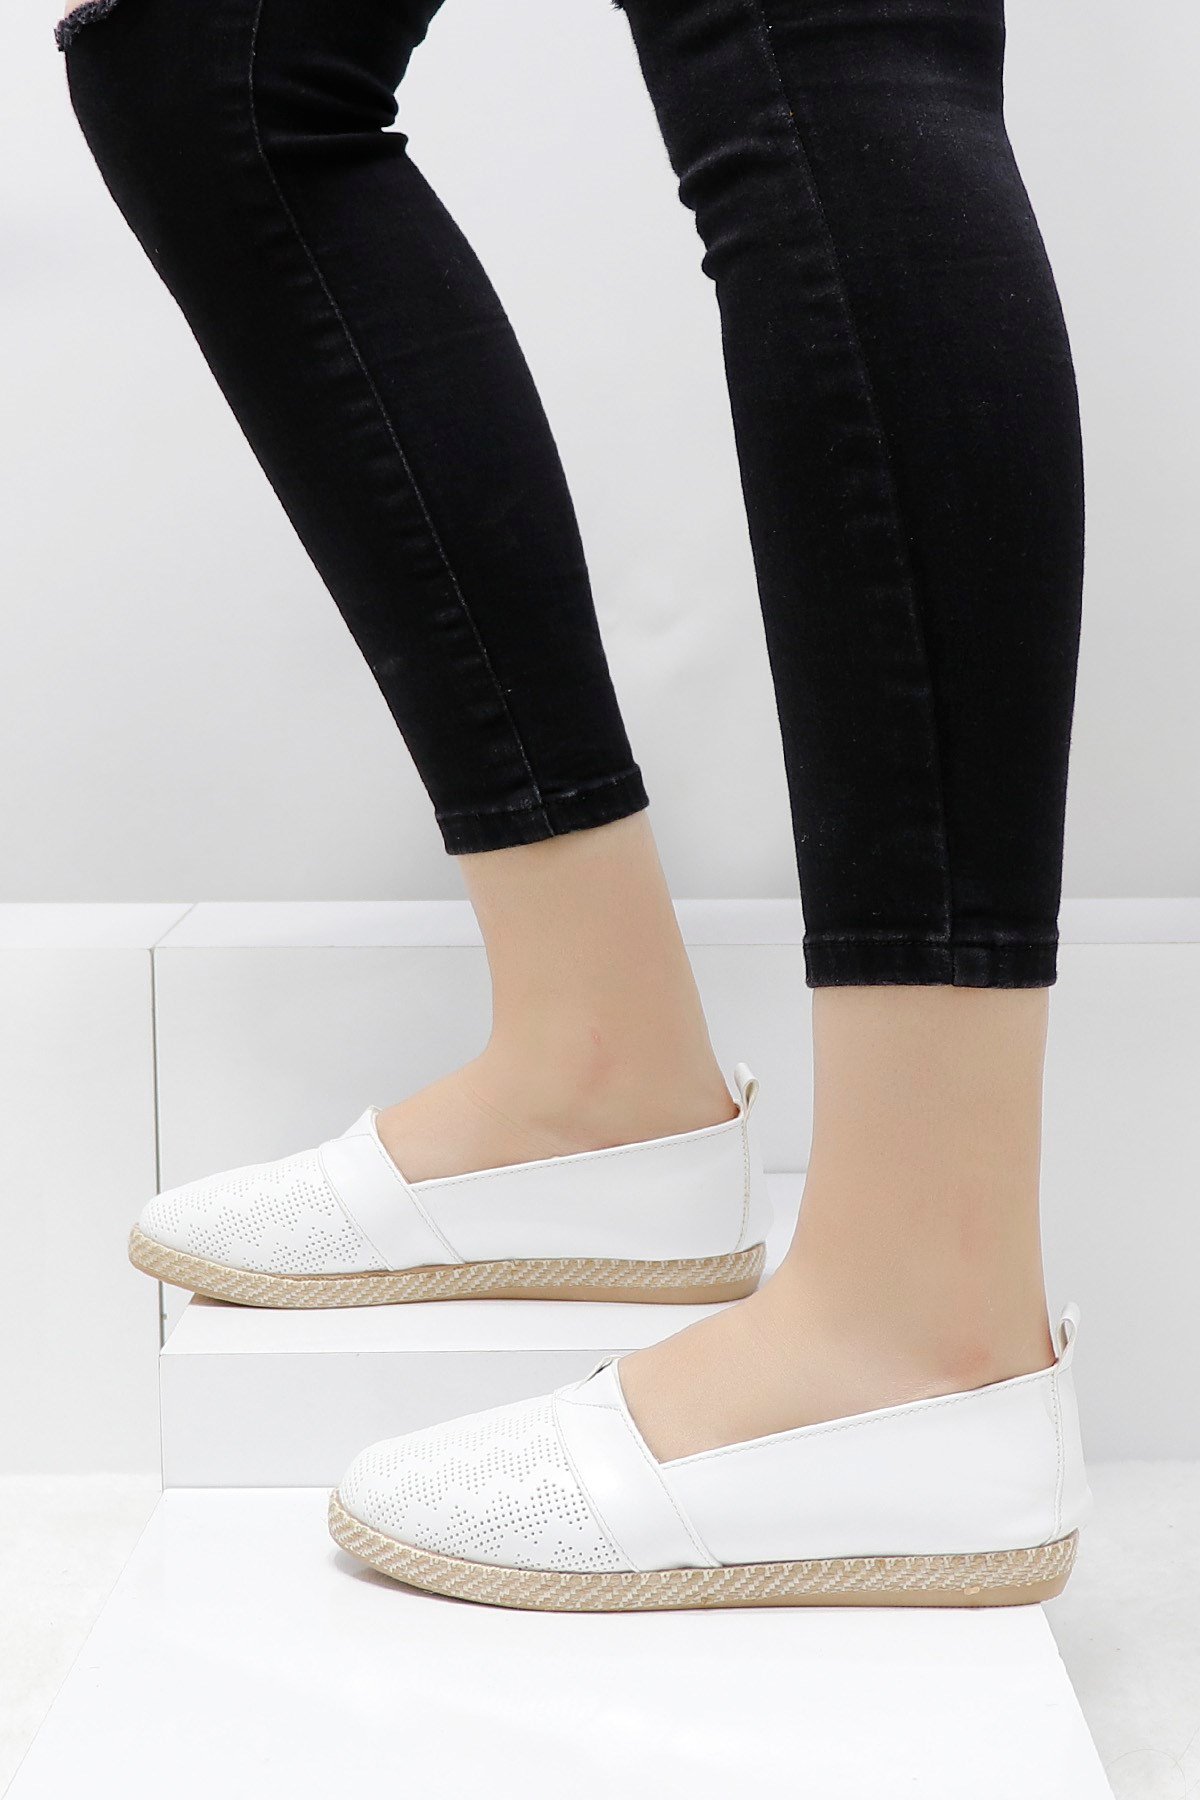 Beyaz Kadın Babet Ayakkabı F04 Fiyatı ve Modelleri